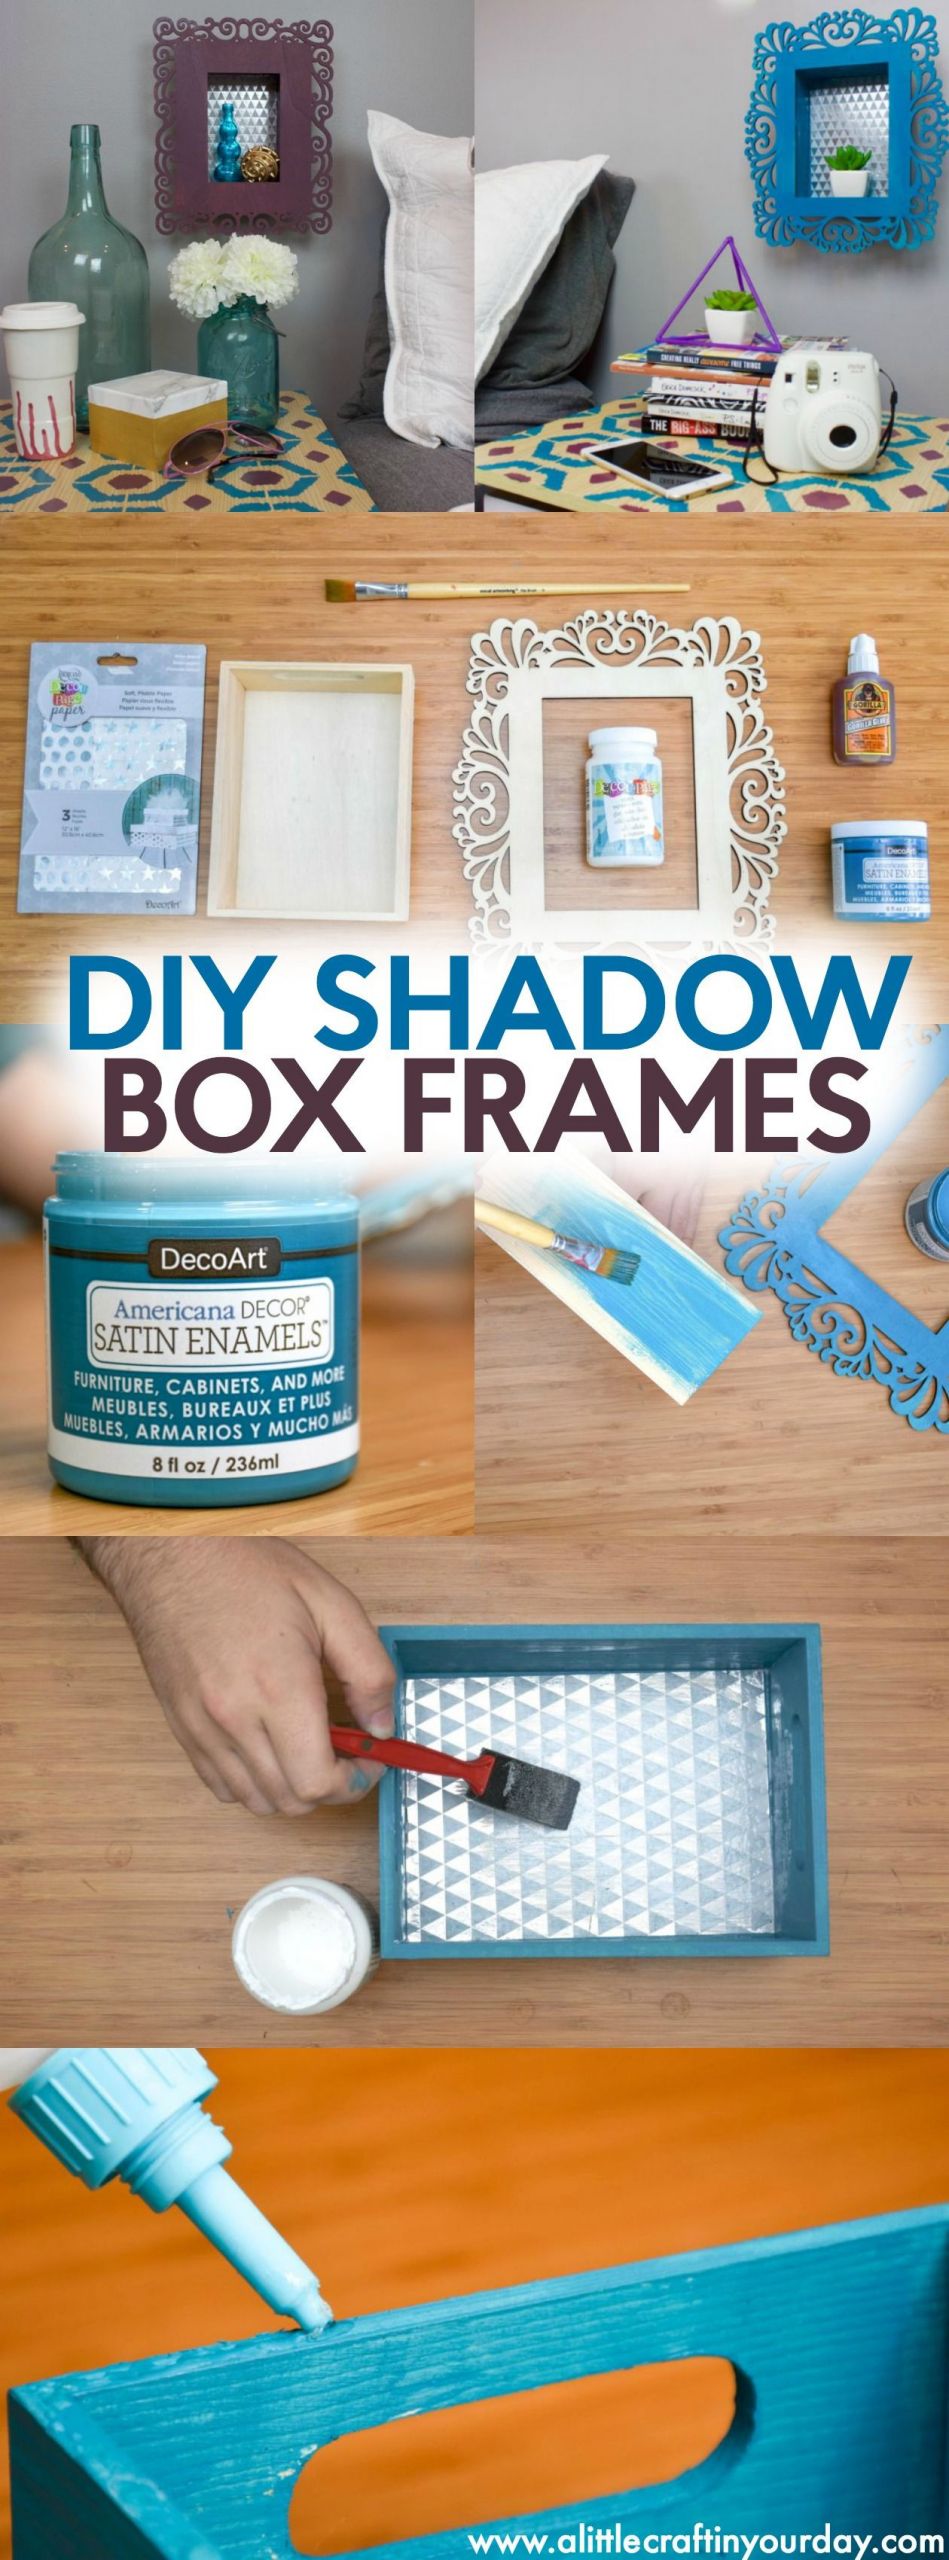 DIY Shadow Box Picture Frame
 DIY Shadow Box Frames